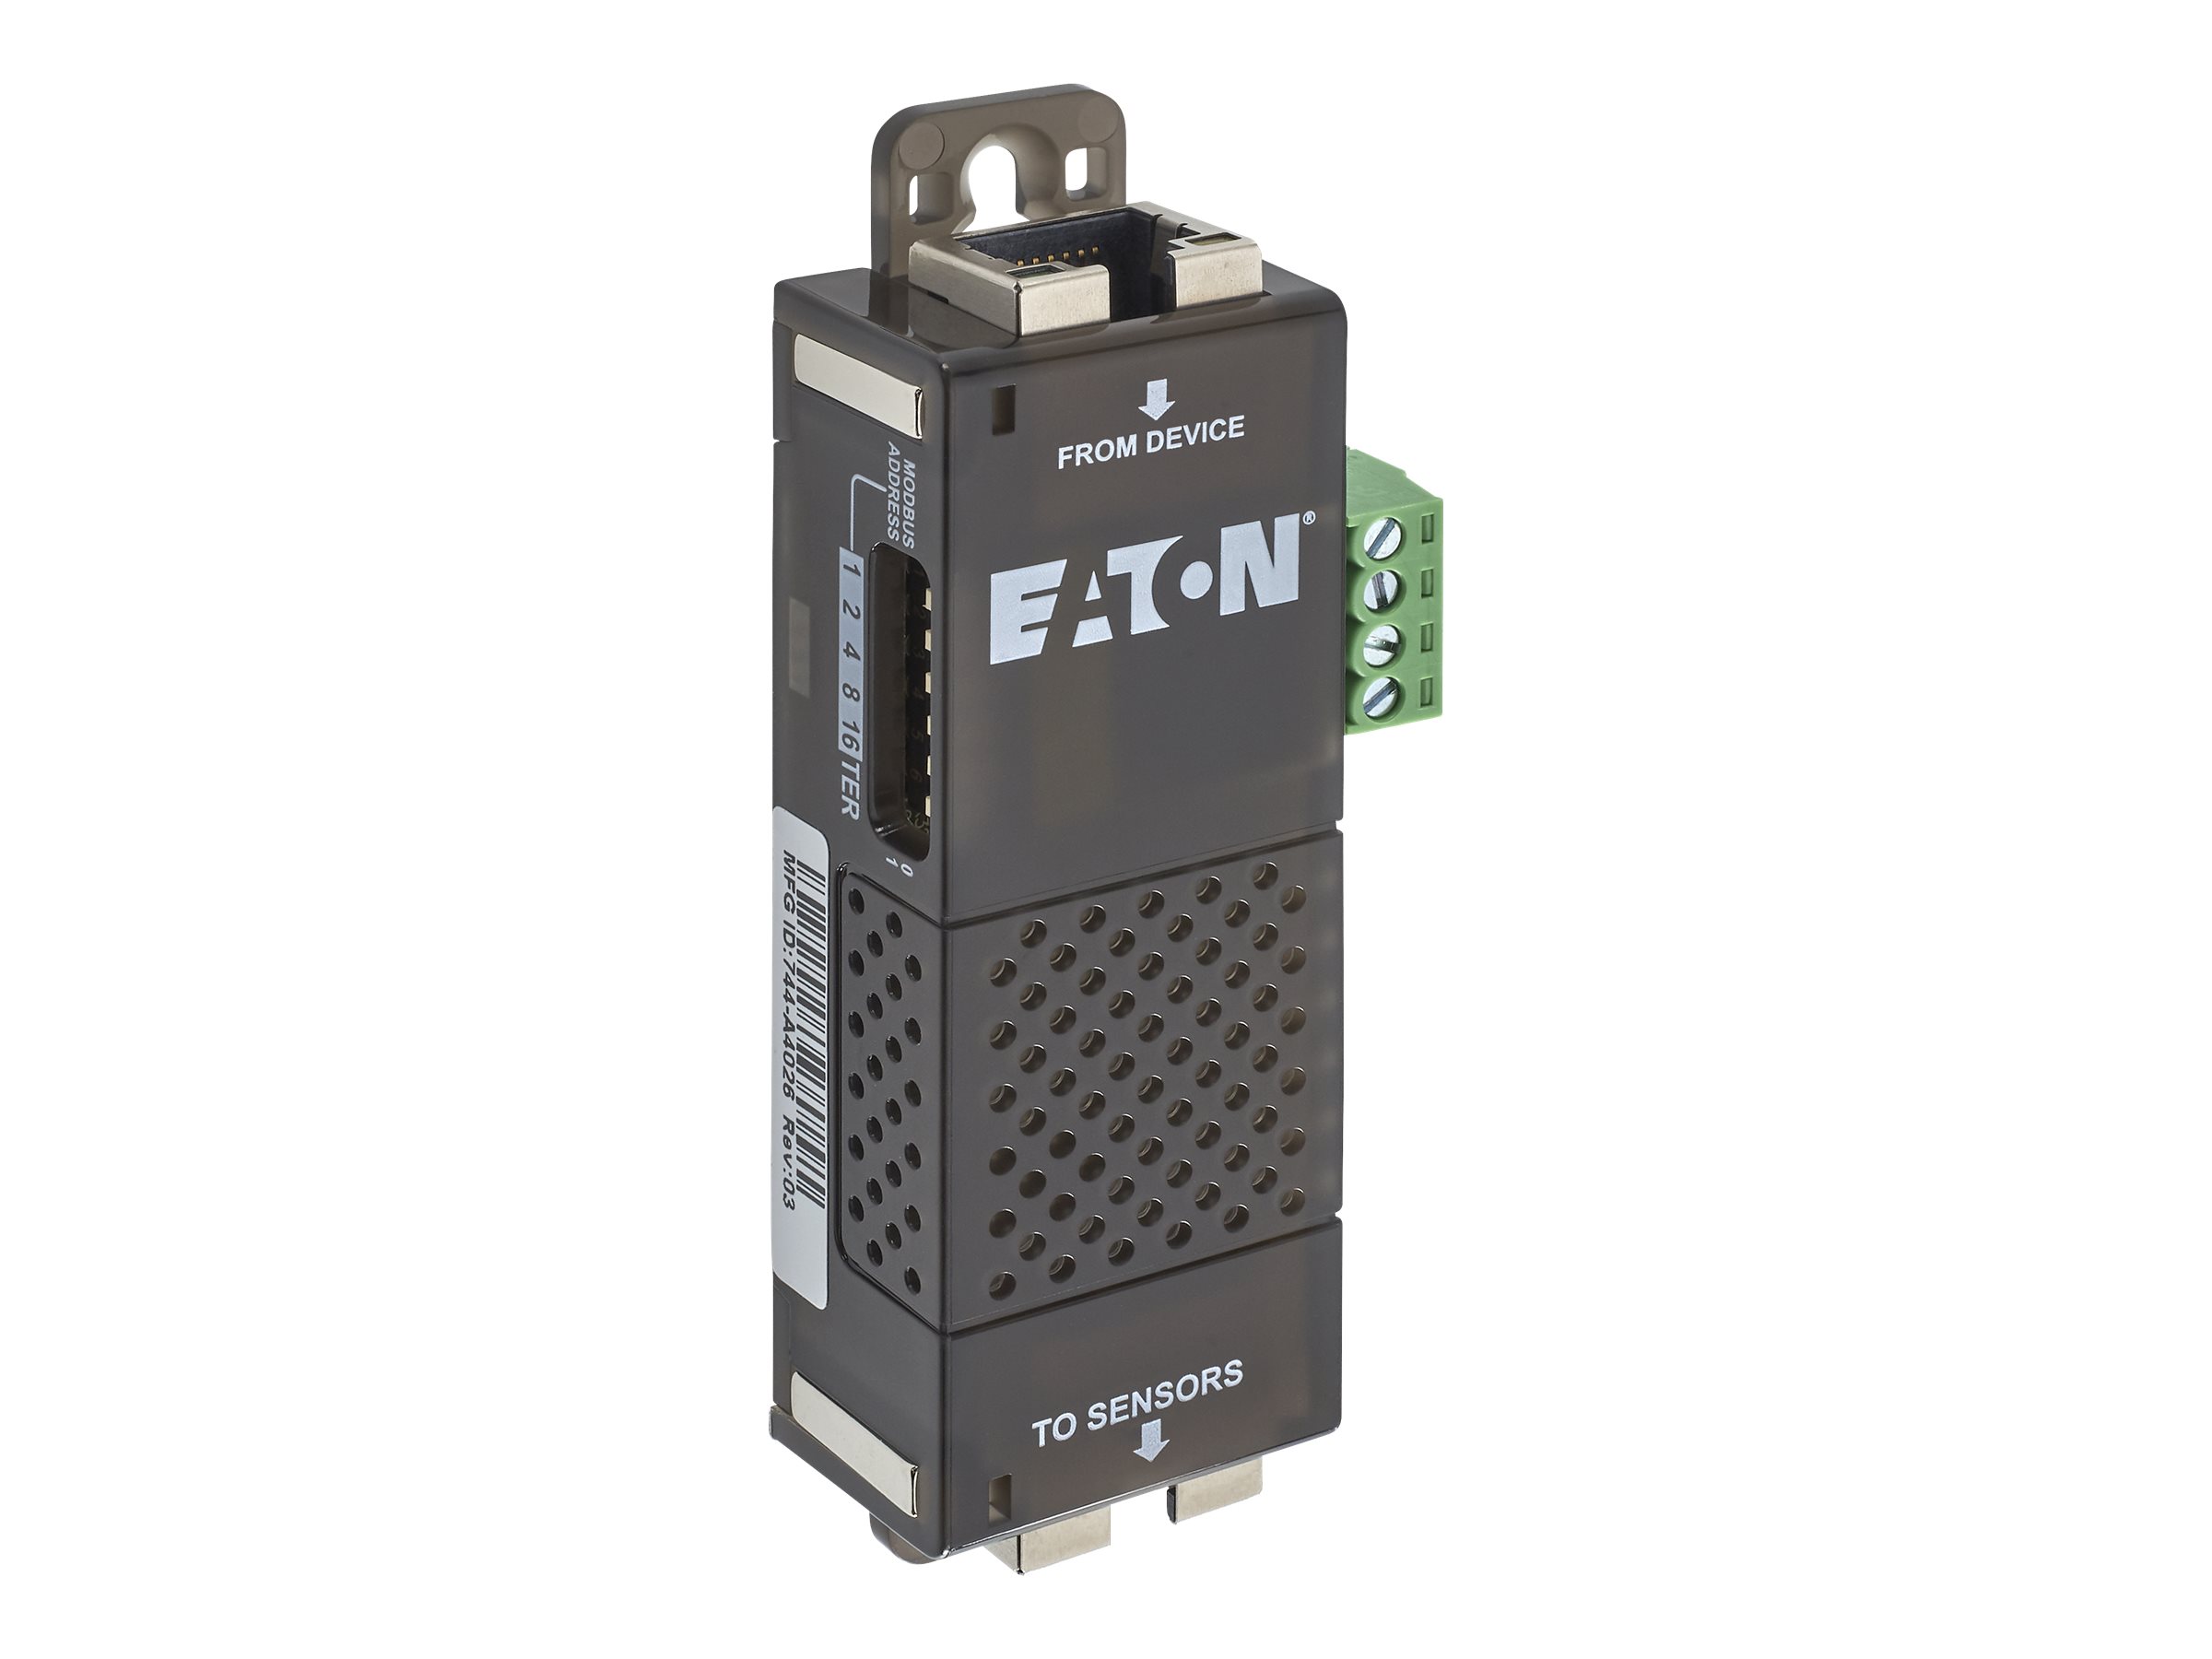 Eaton Environmental Monitoring Probe - Gen 2 - appareil de surveillance de l'environnement - 1GbE - pour 5P 1500 RACKMOUNT - EMPDT1H1C2 - Périphériques réseau spécialisés